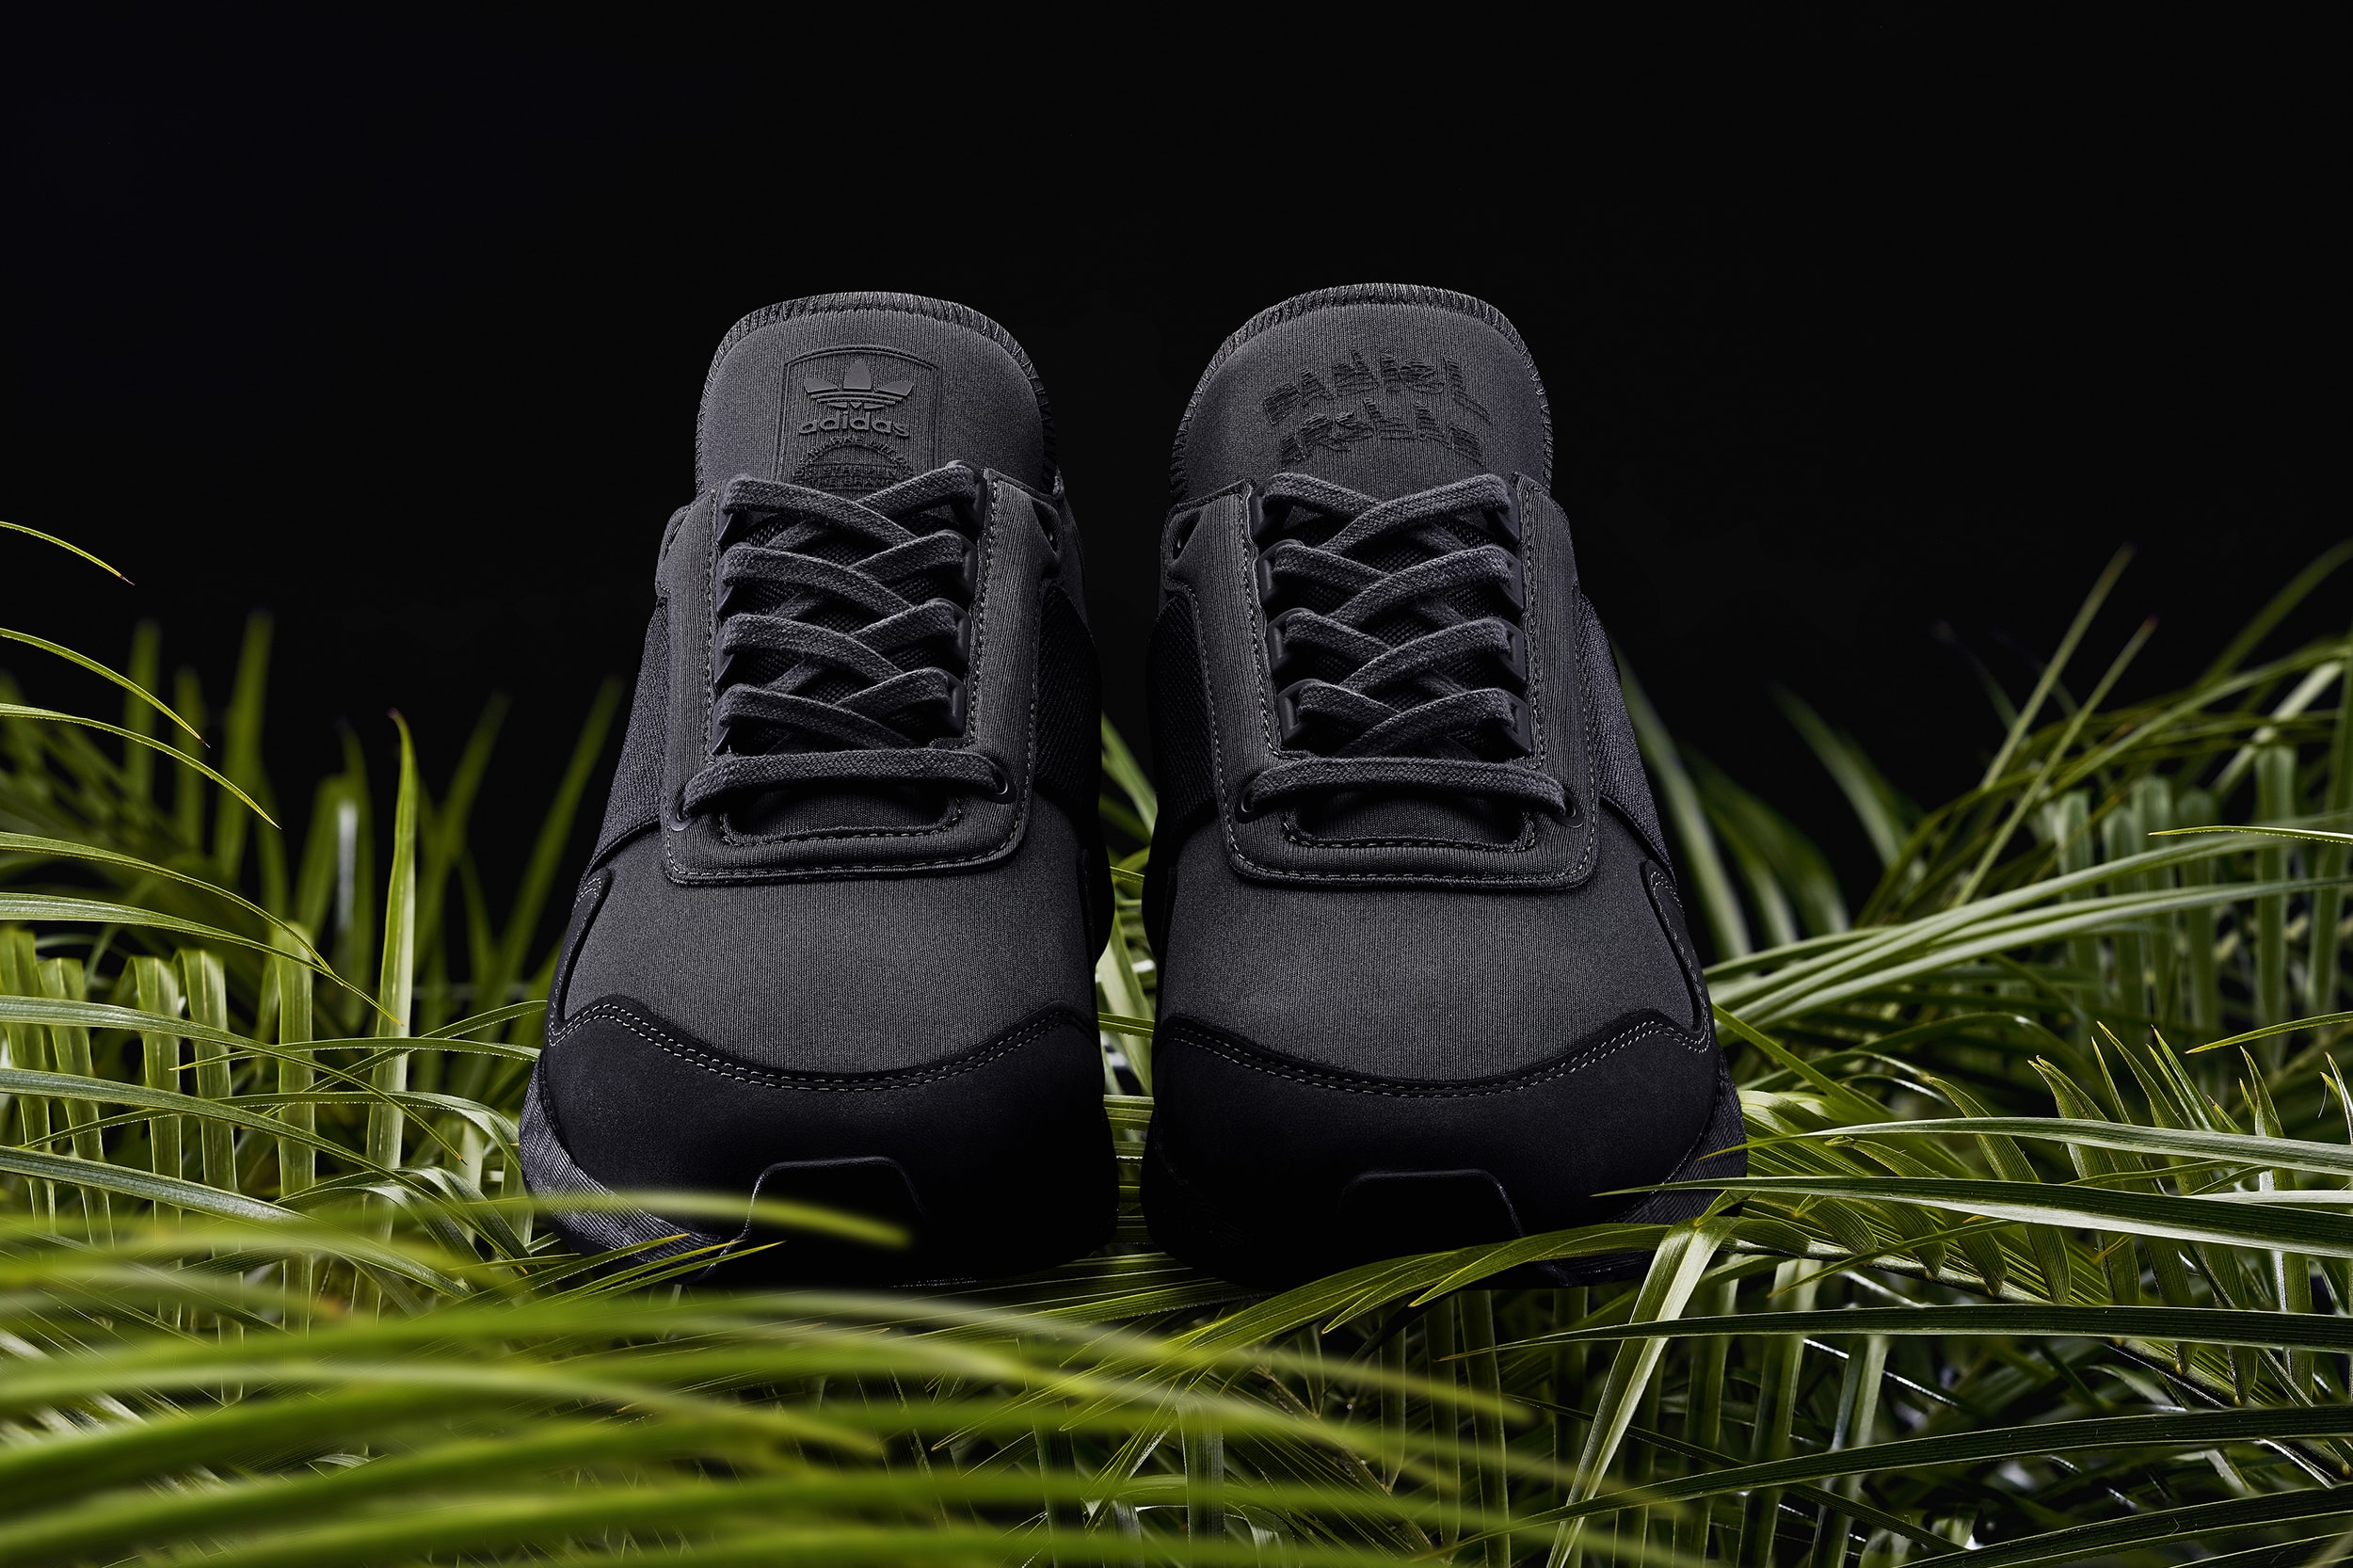 Daniel Arsham “Présent” adidas Originals